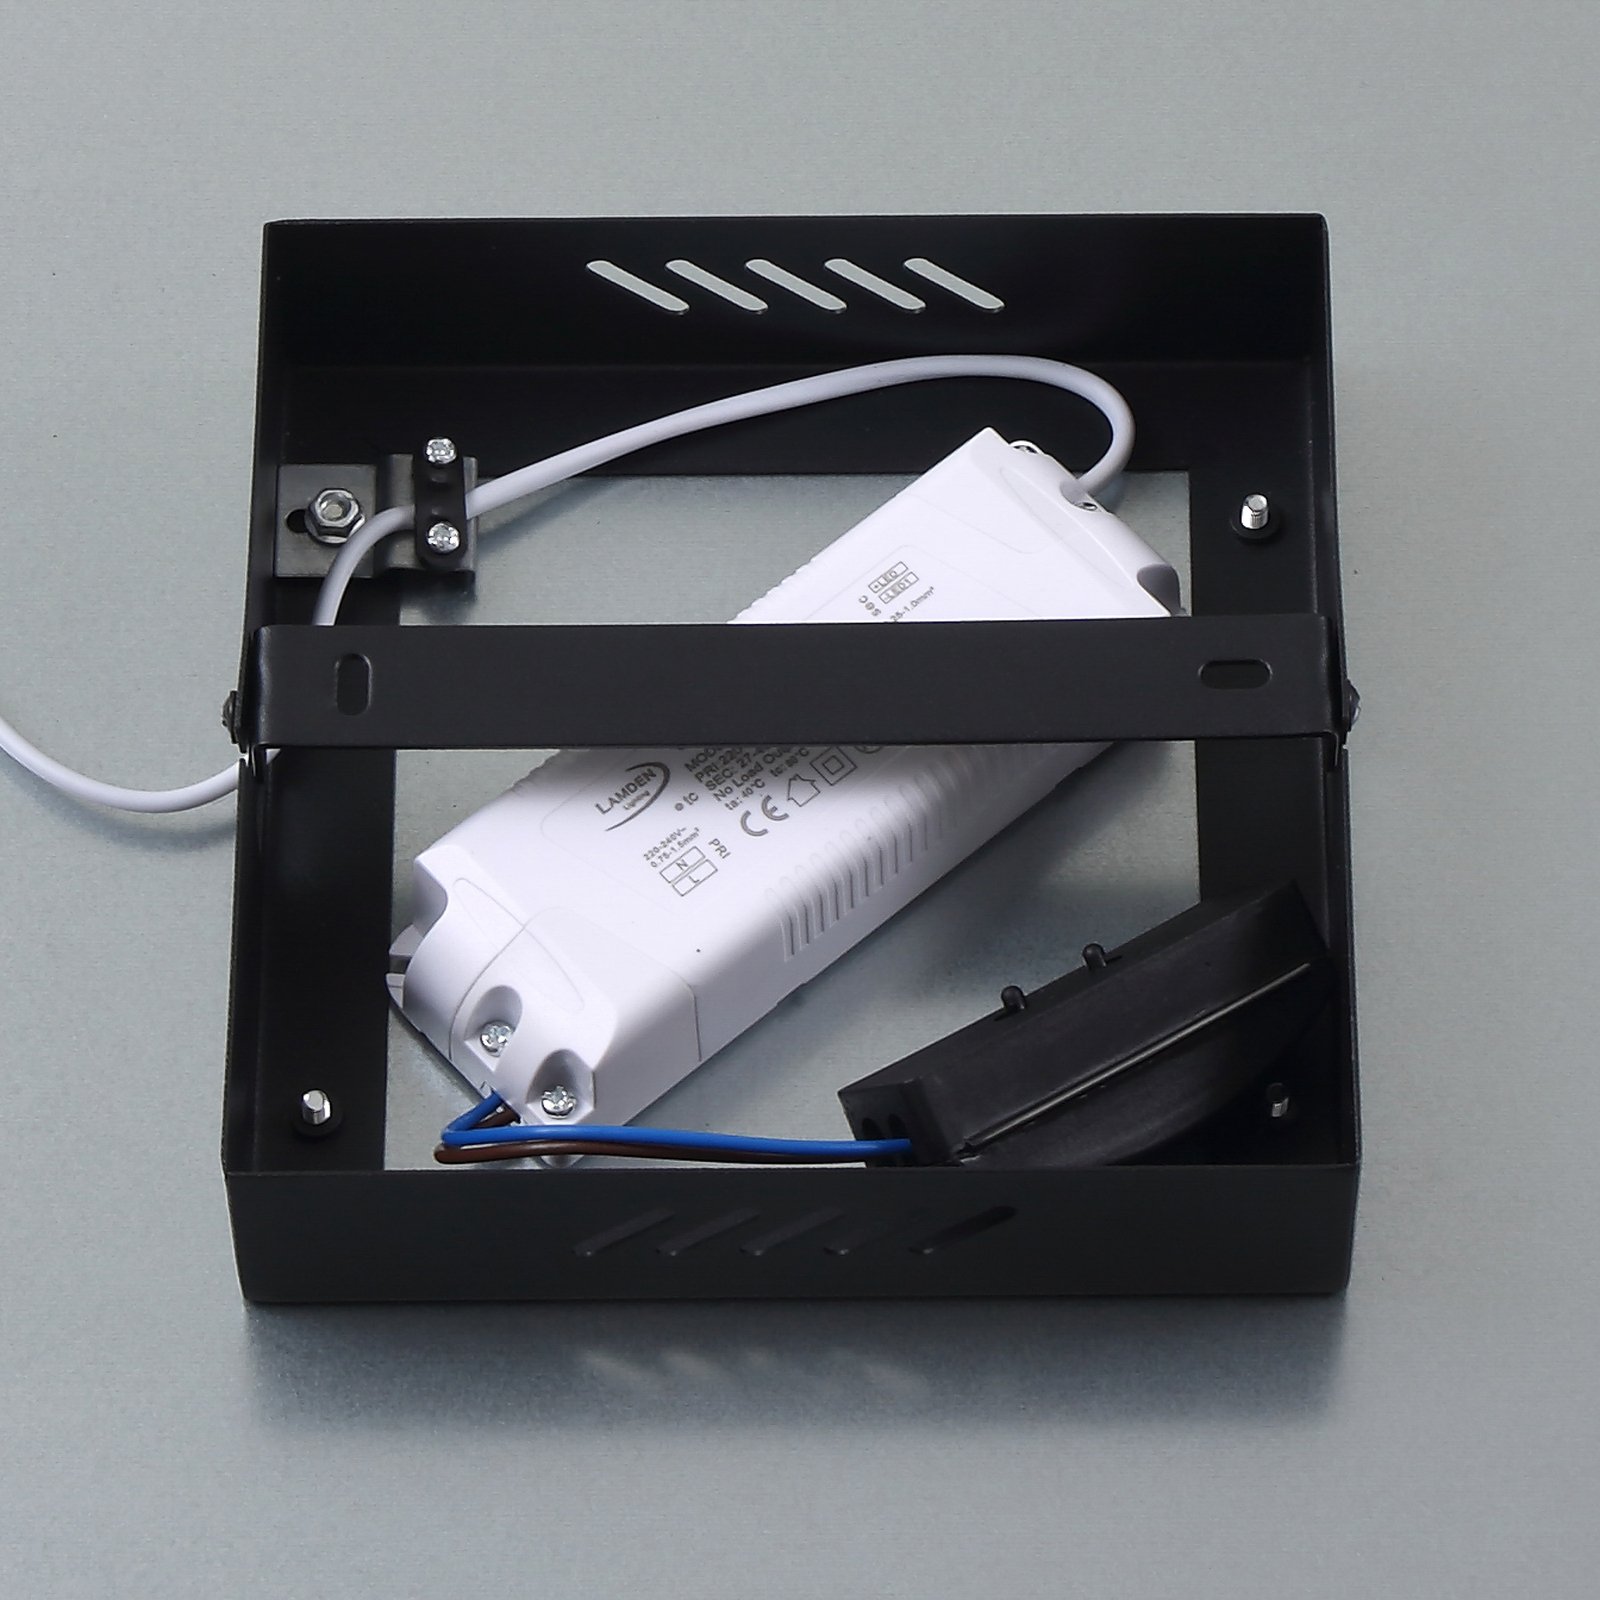 Lindby LED-Panel Enhife, schwarz, 39,5x39,5 cm